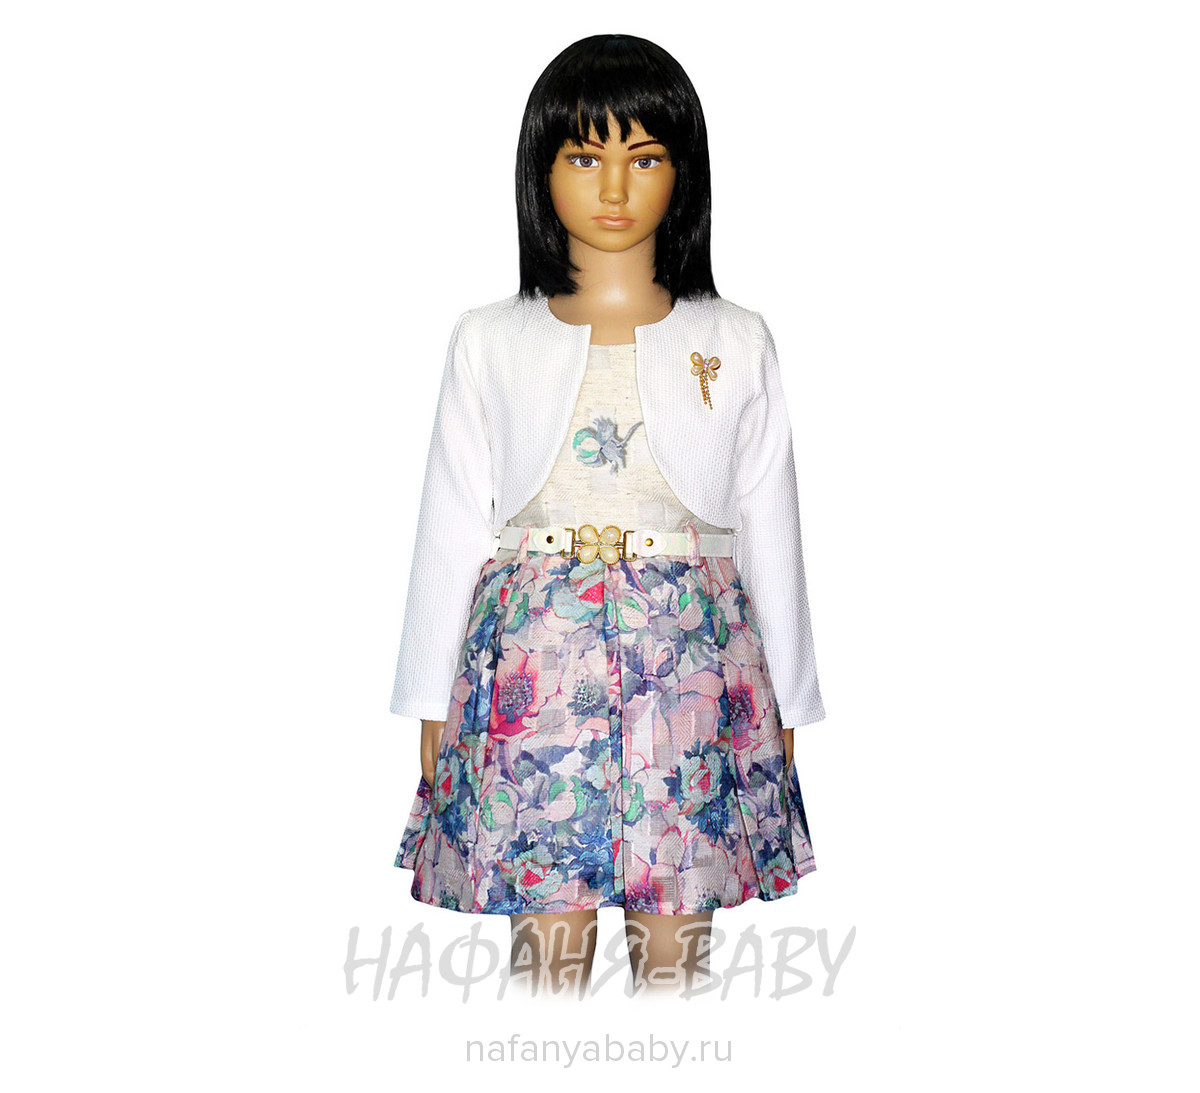 Детское нарядное платье + болеро OBELLA, купить в интернет магазине Нафаня. арт: 2160.